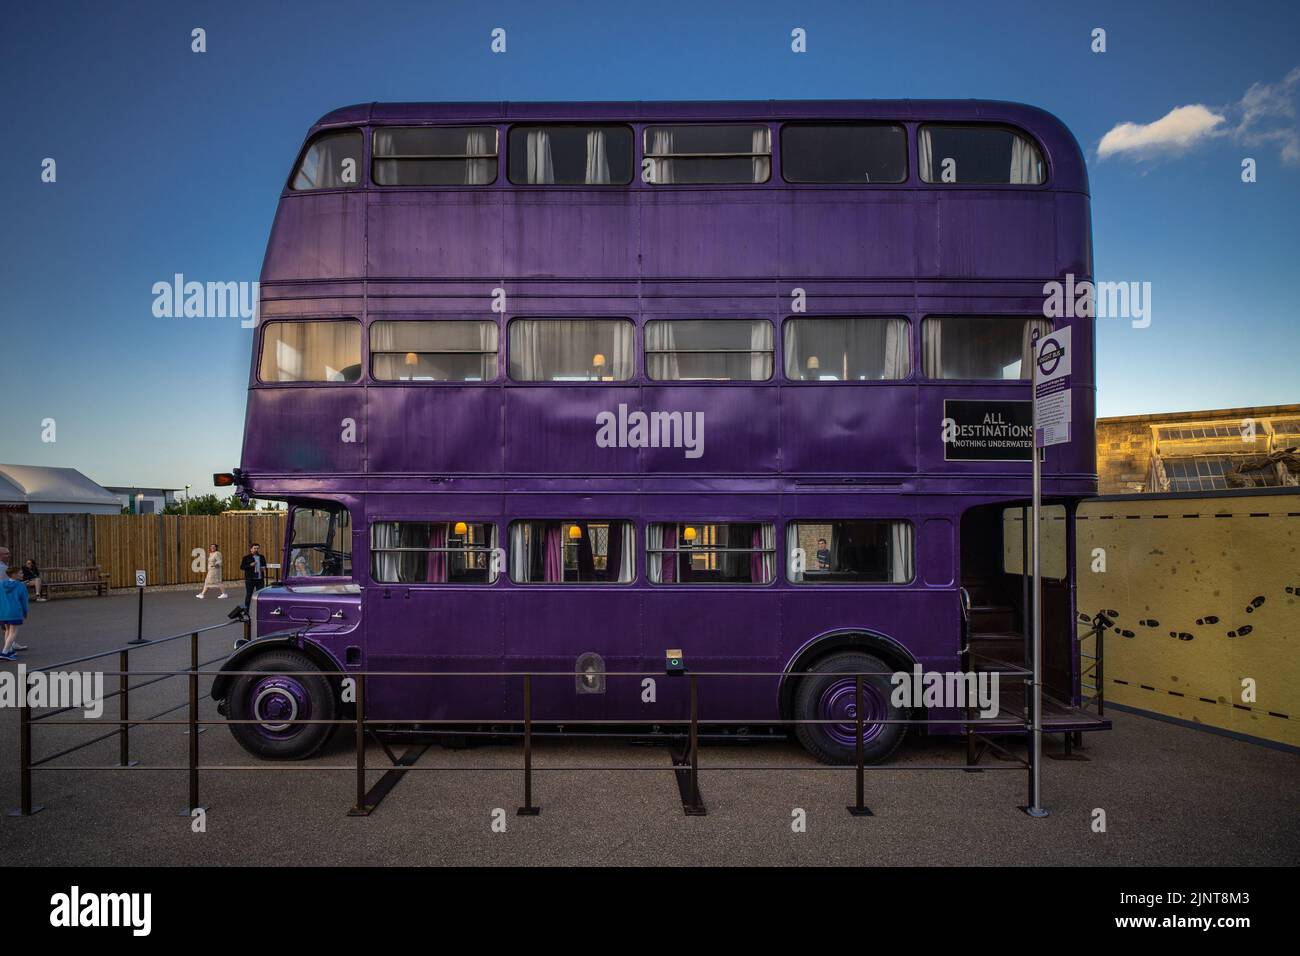 Londres, Royaume-Uni - 10 juin 2022 : bus chevalier du prisonnier d'Azkaban, bus violet à impériale à Warner Bros Studio, Londres Banque D'Images